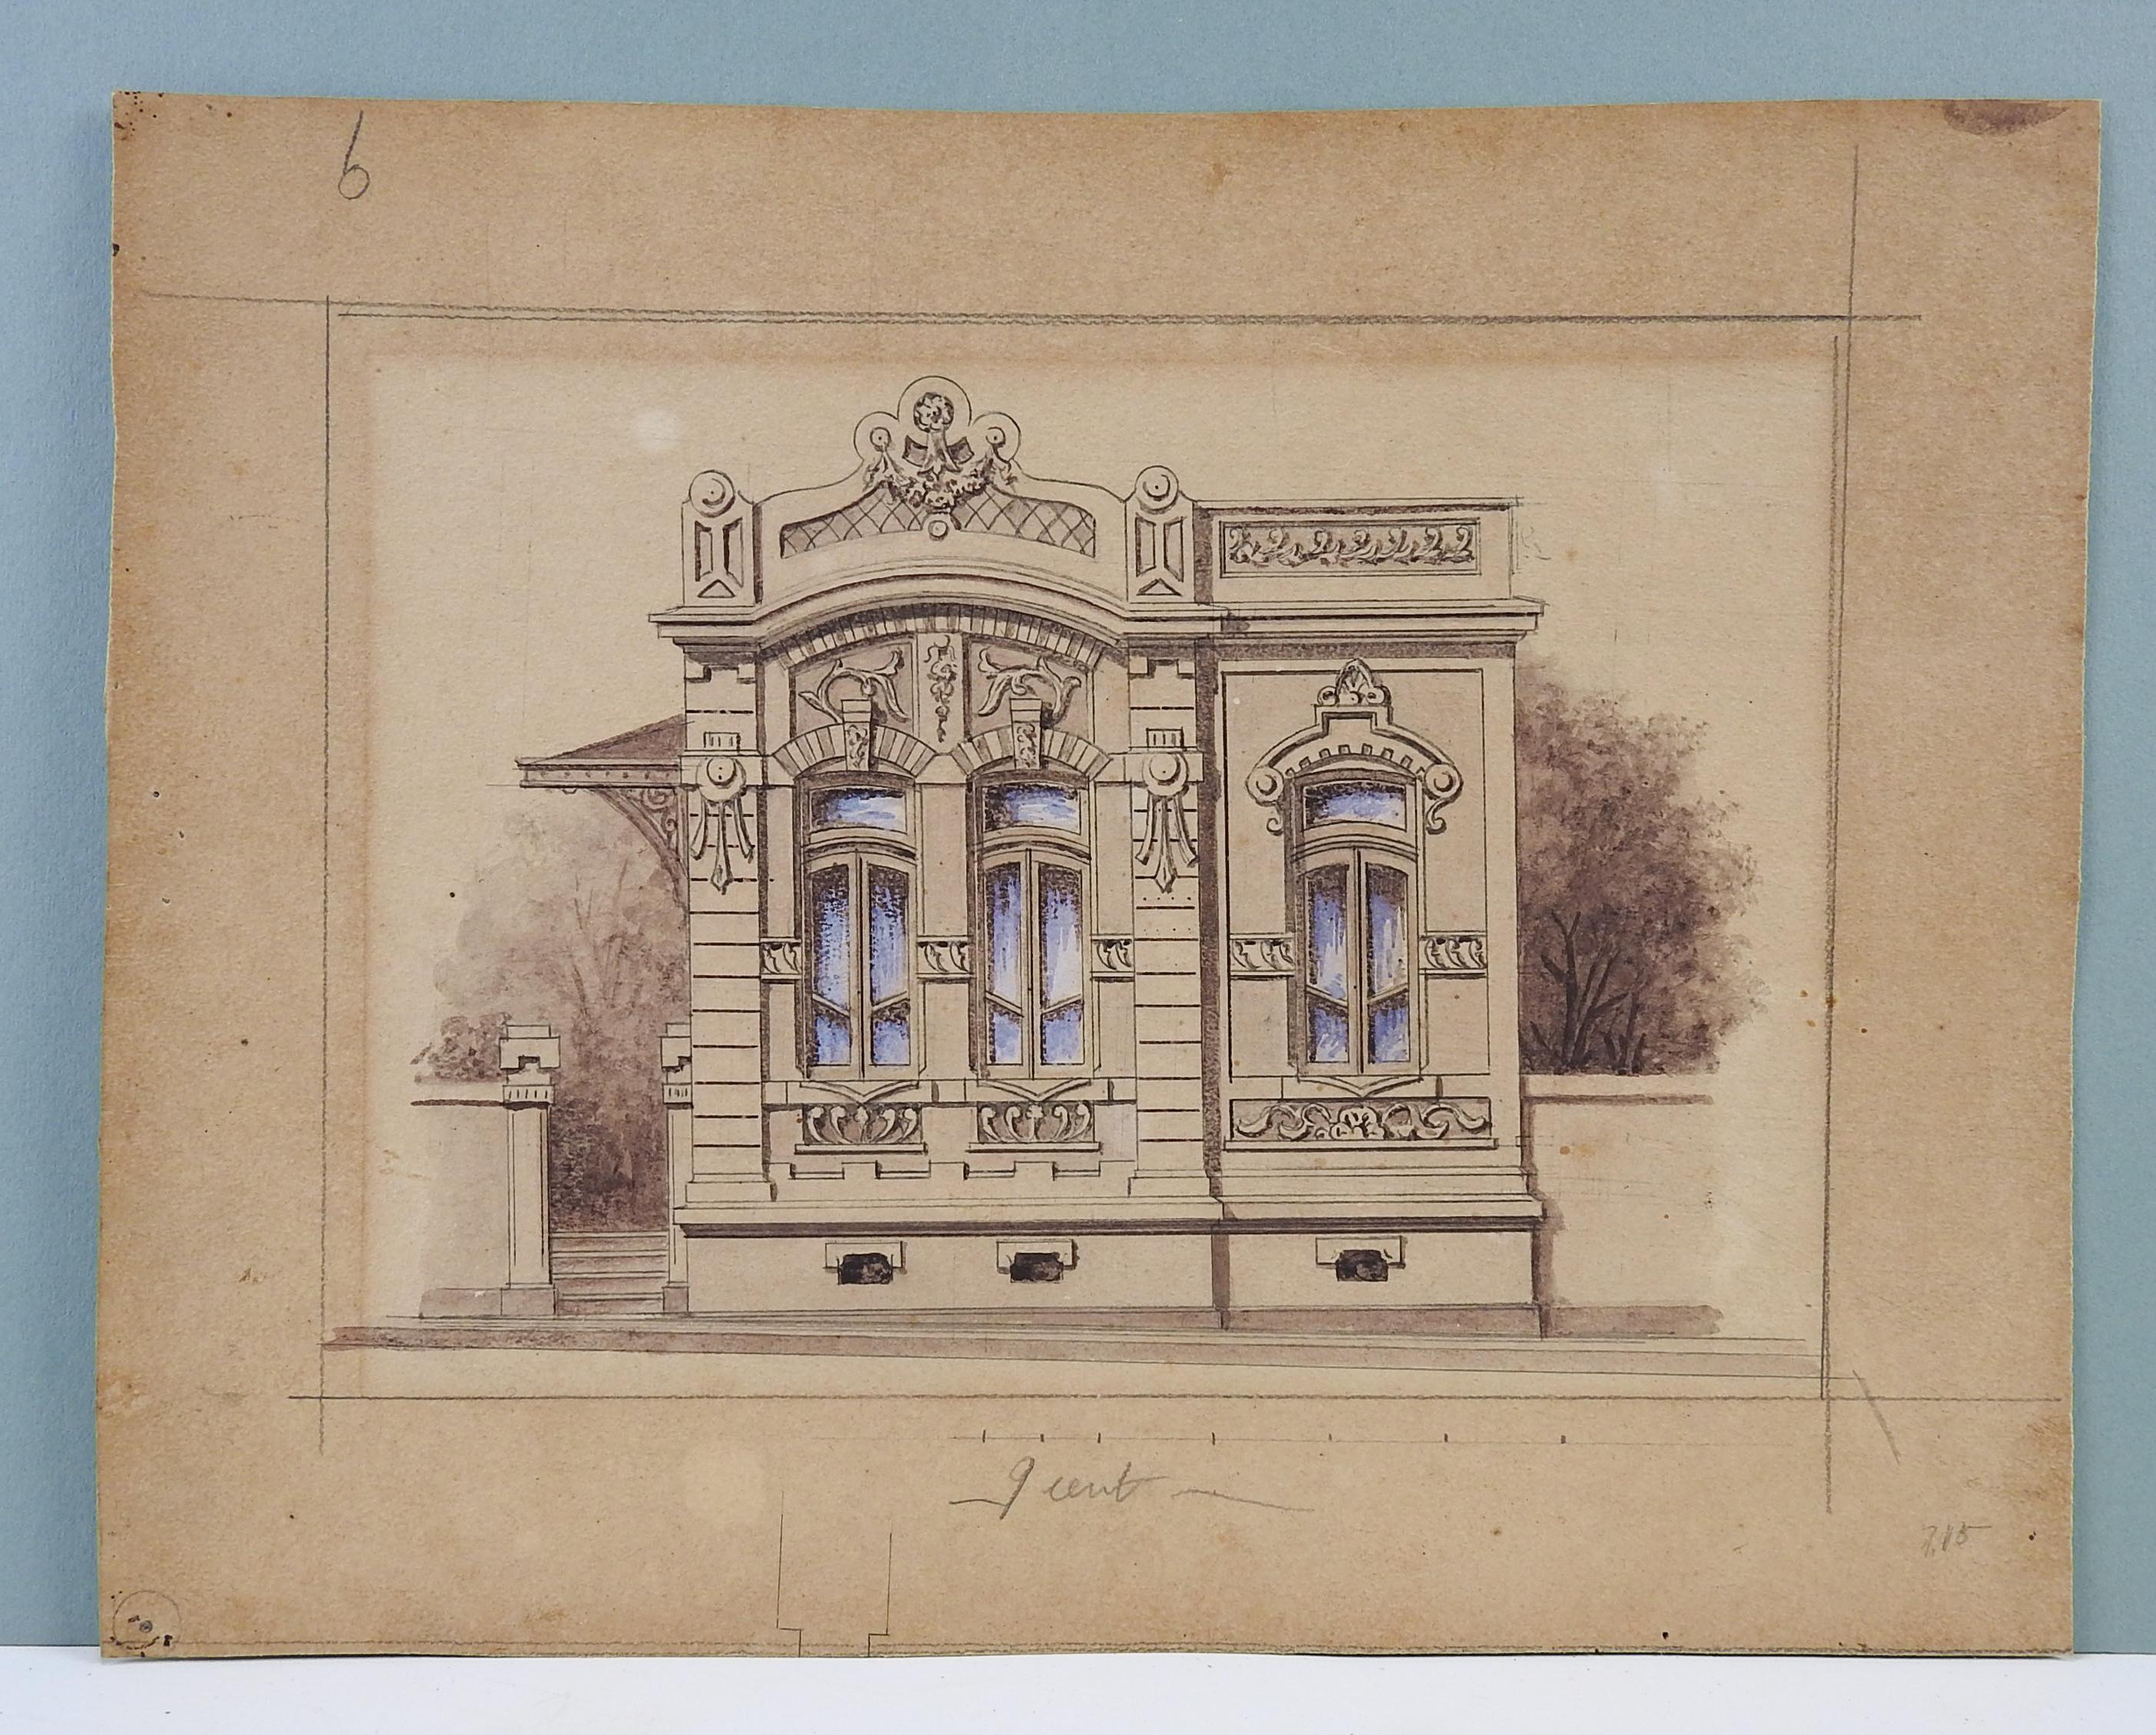 Architekturdarstellung in Aquarell, Gouache und Bleistift auf Papier von Luiz Olivieri Italien/Brasilien, um 1900. Nicht signiert. Ungerahmt, Alterstönung, Randabnutzung.